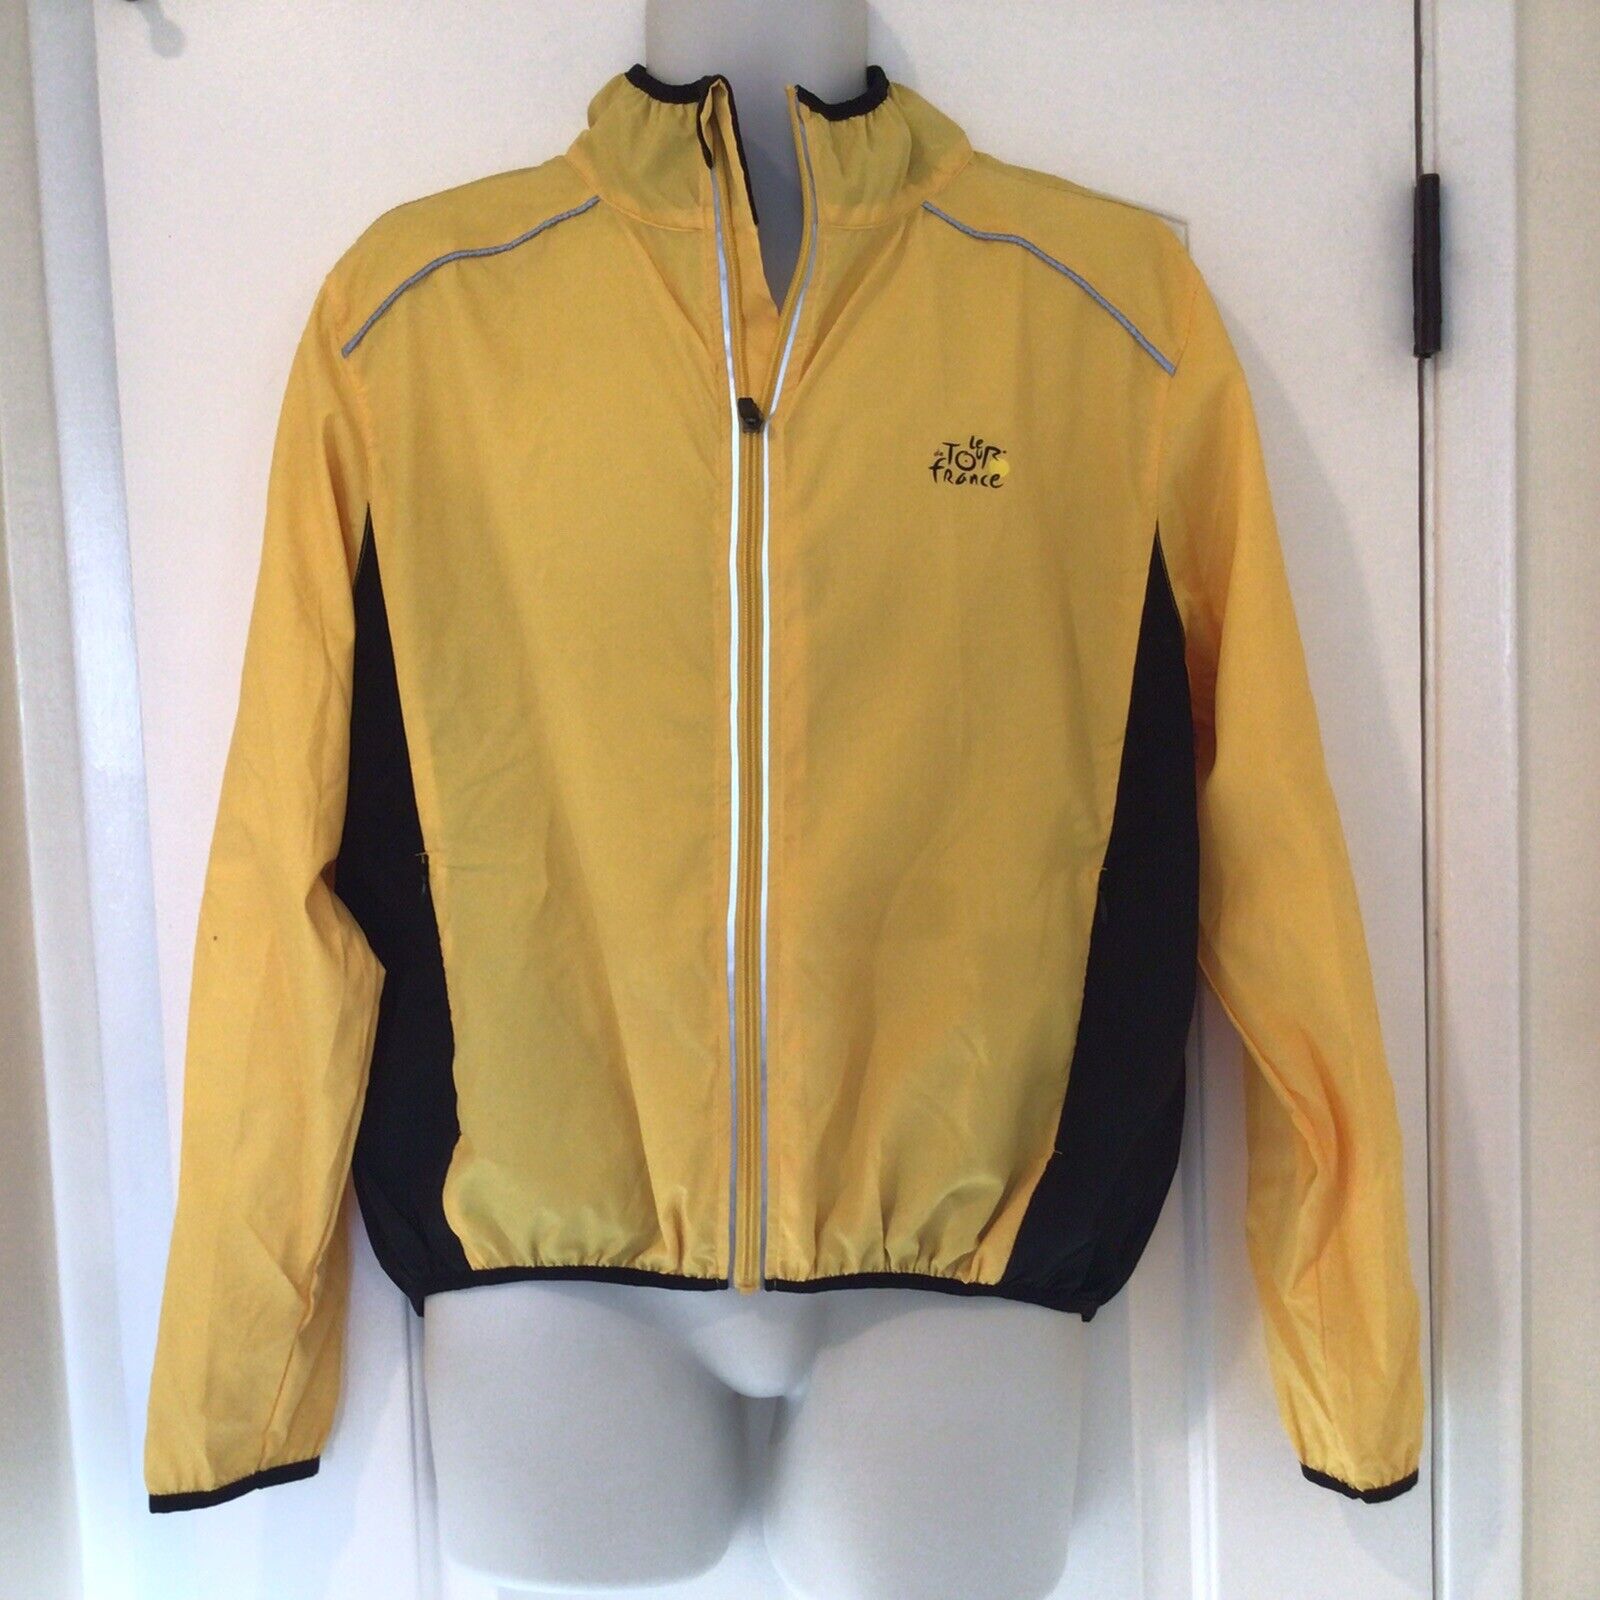 Tour de france yellow jacket